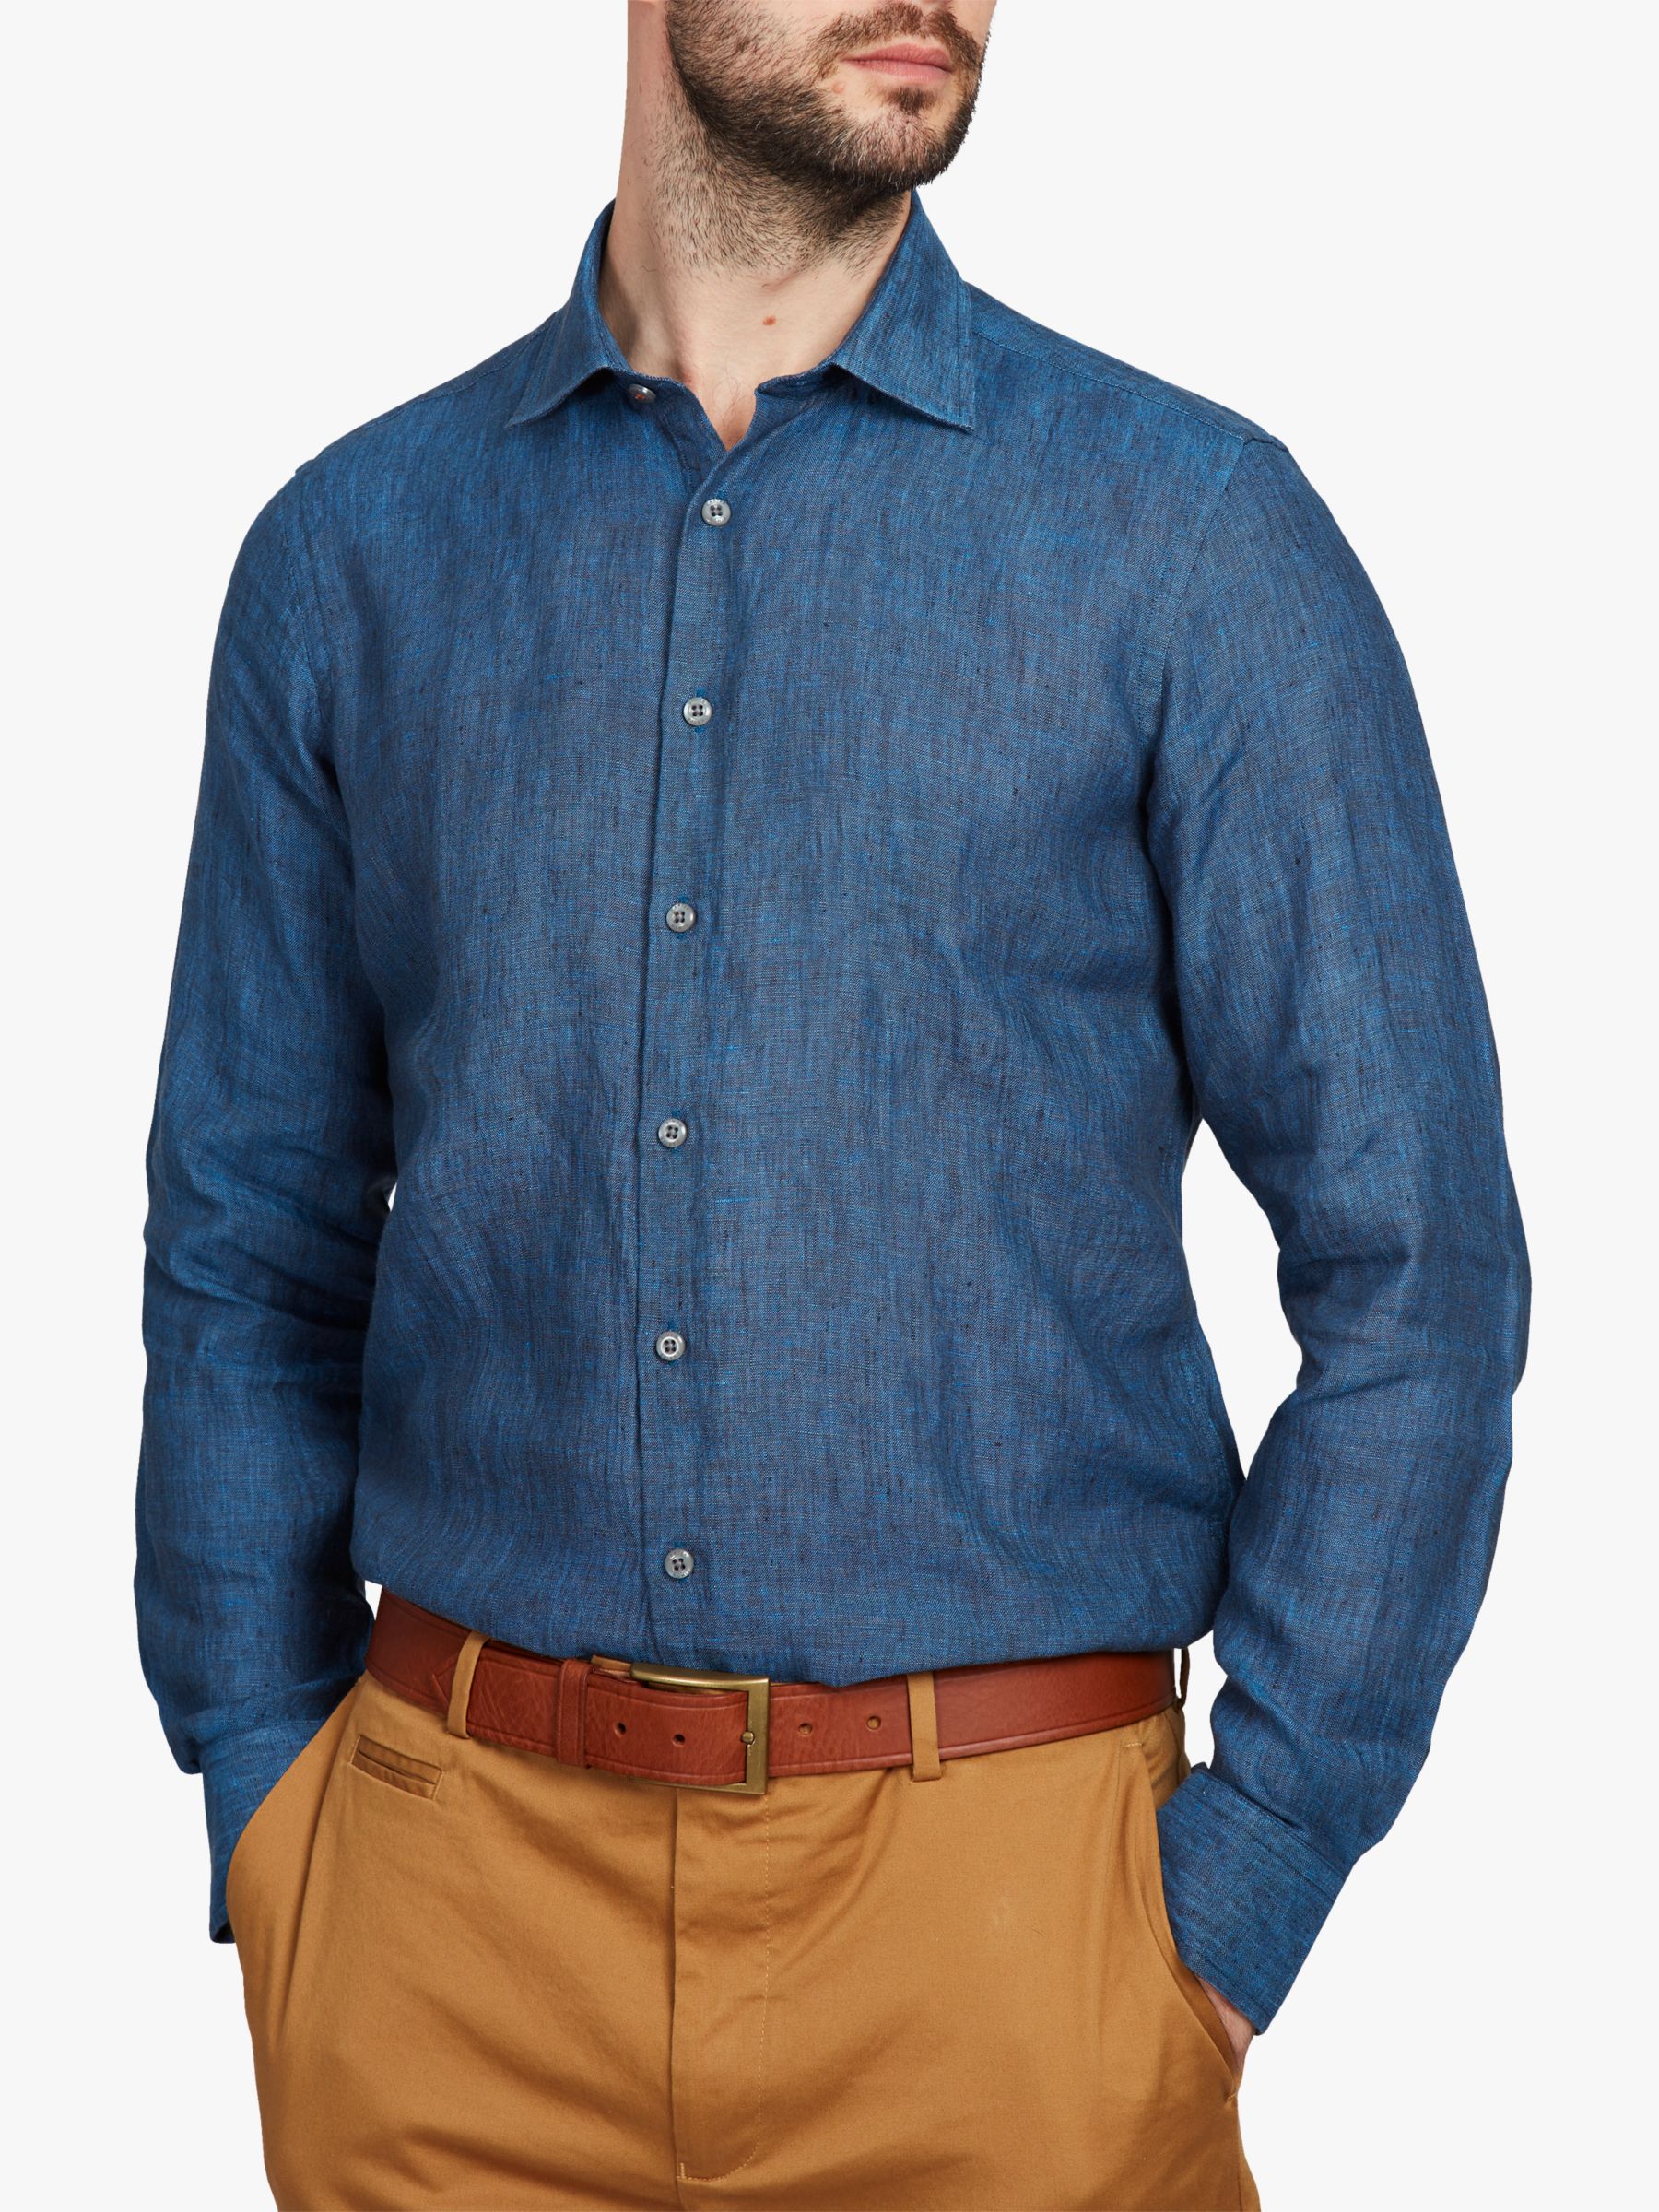 Simon Carter Plain Linen Shirt, Indigo, S